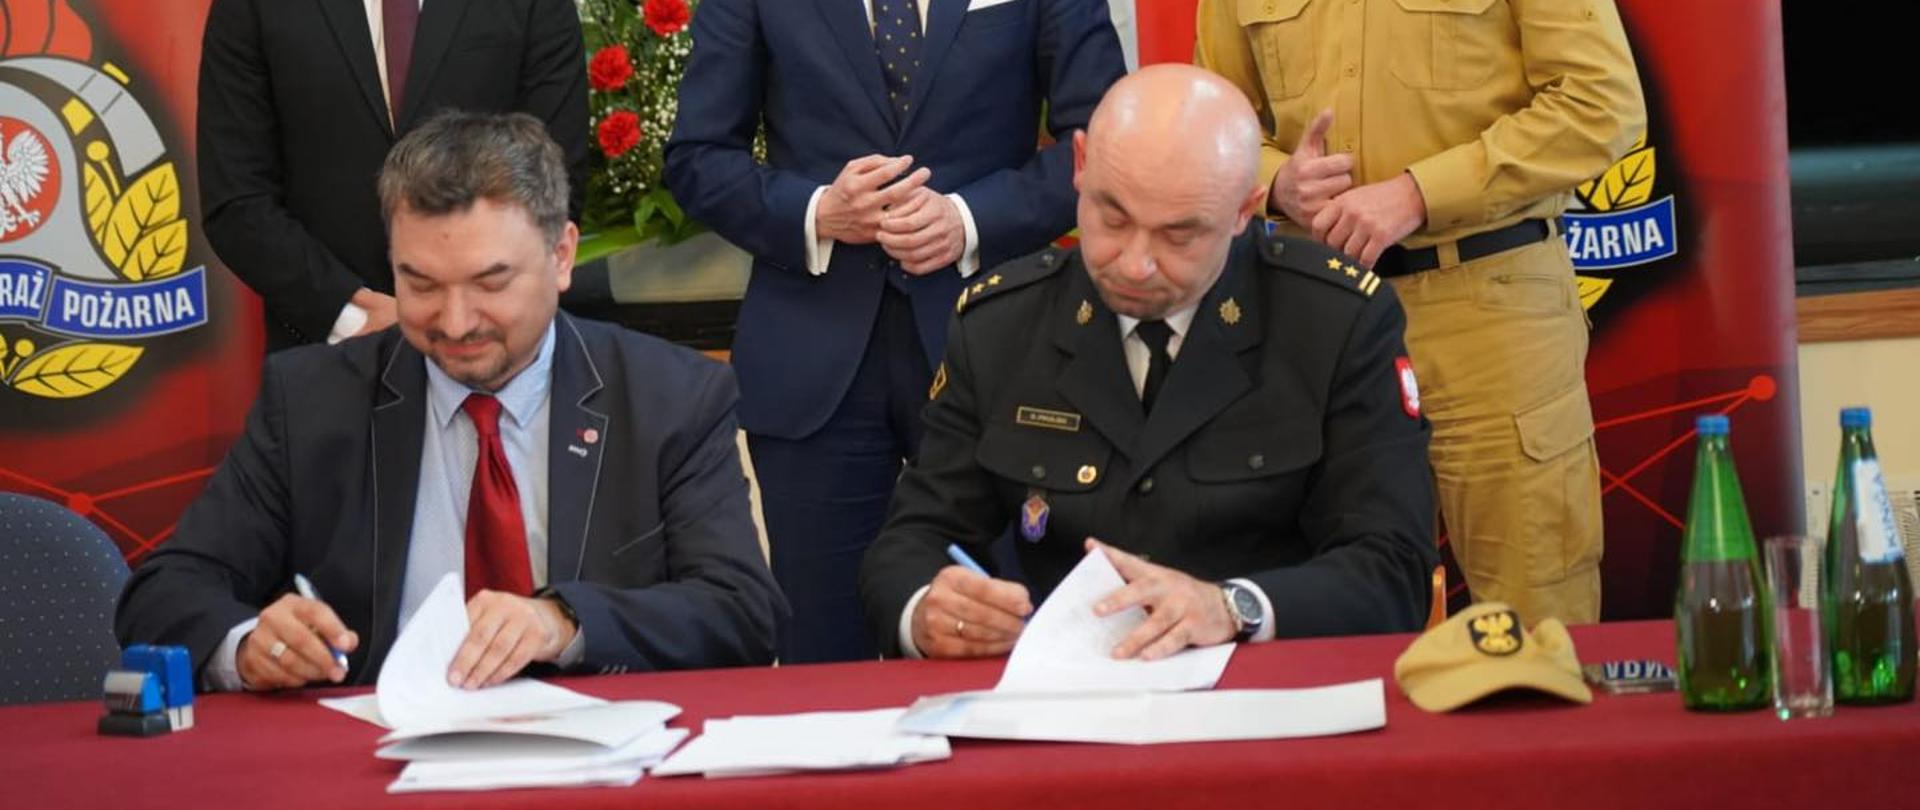 Podpisanie umowy na dokumentację projektową i nadzór autorski strażnicy Jednostki Ratowniczo - Gaśniczej w Międzyzdroje.